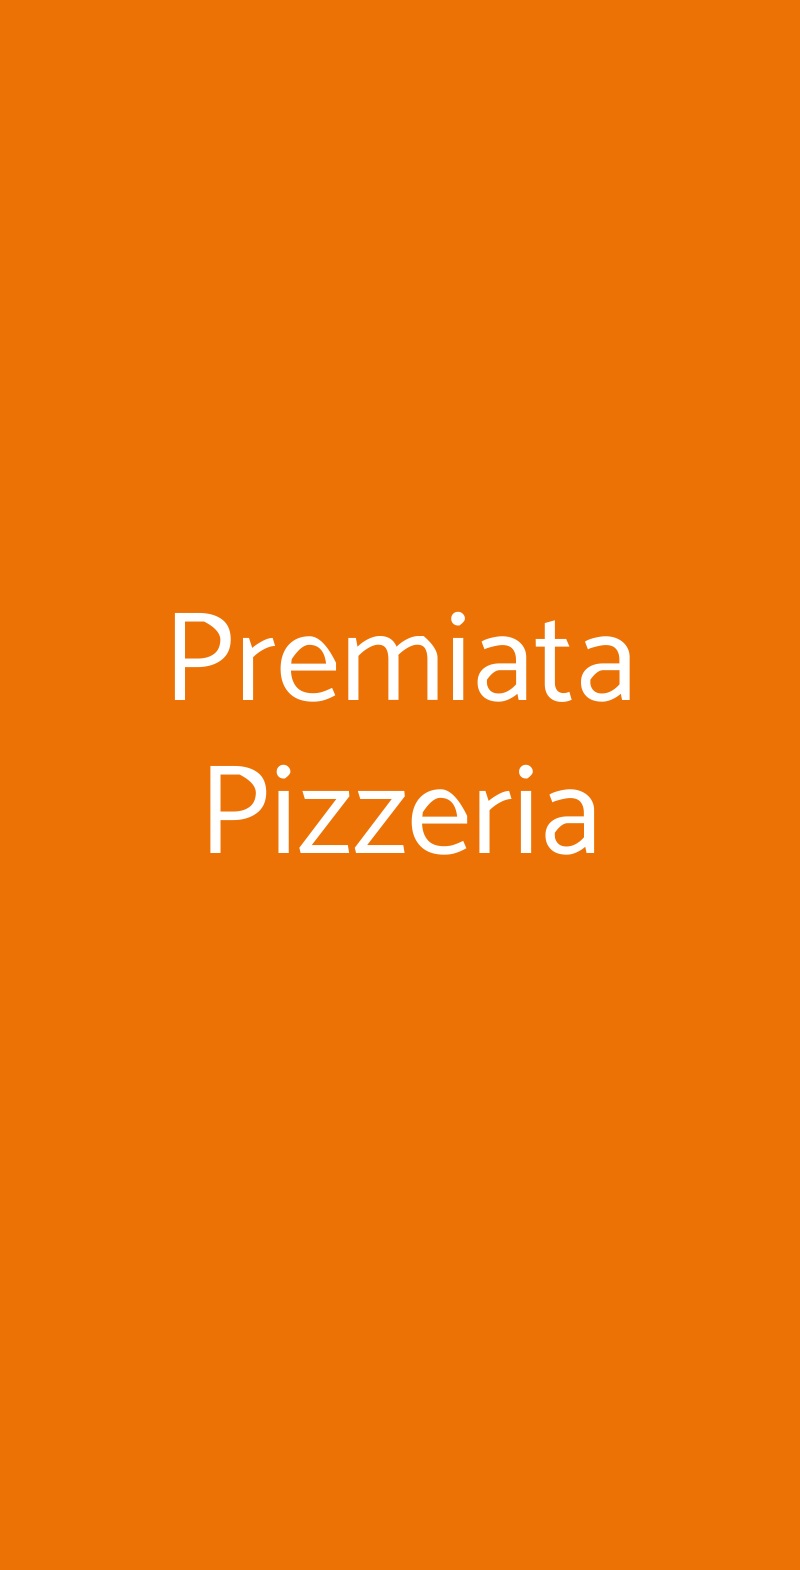 Premiata Pizzeria Milano menù 1 pagina